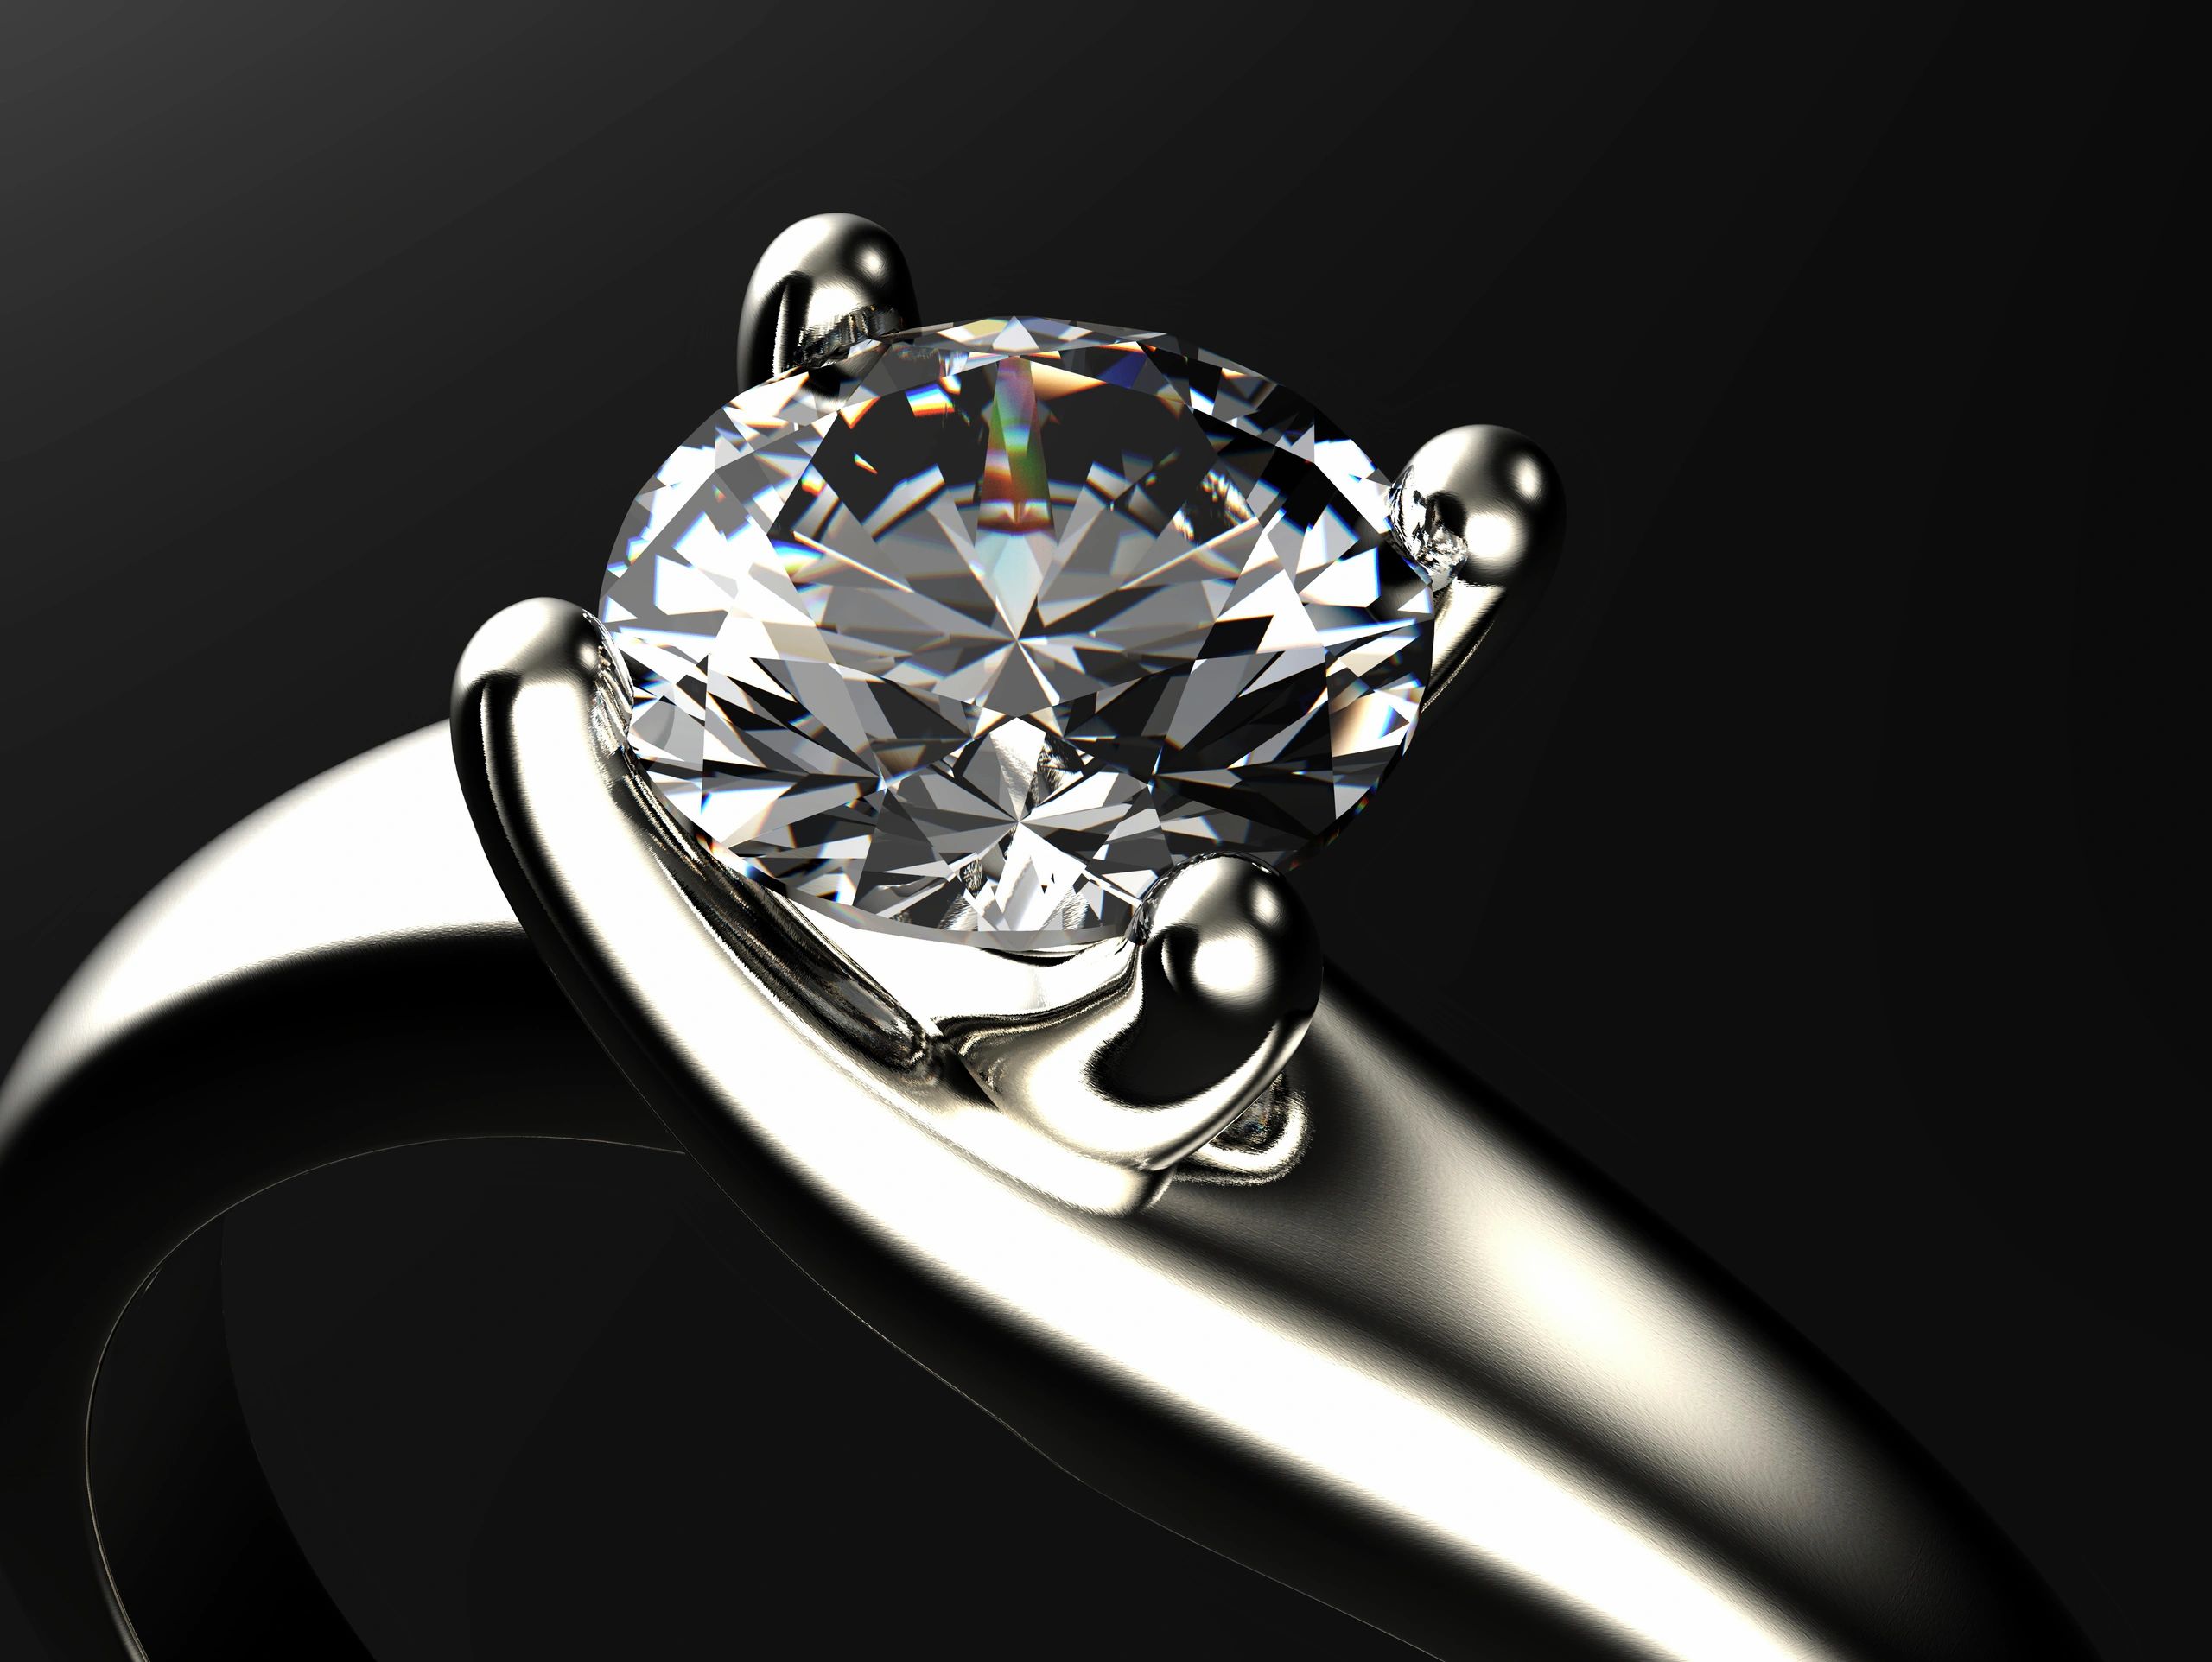 Ювелирное изделие кольцо с бриллиантом. Даймонд джевелери. Diamant ювелирные украшения. Кольцо с бриллиантом. Ювелирные украшения с алмазами.